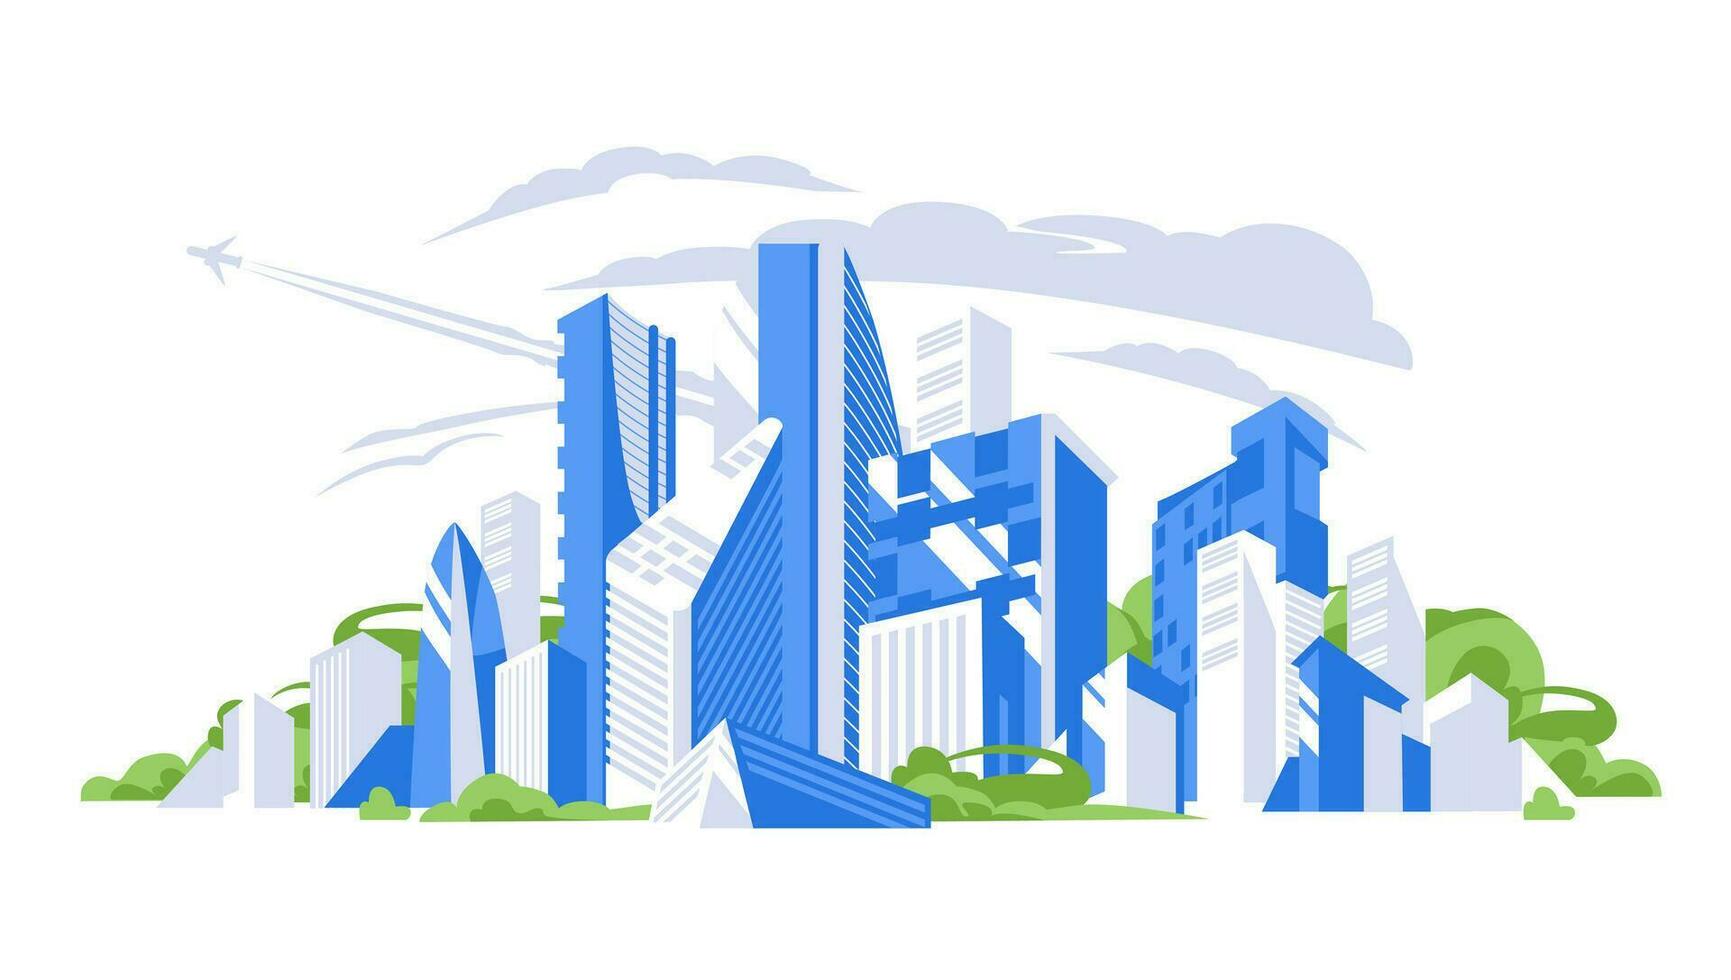 blauw en grijs stadsgezicht achtergrond. stad gebouwen met bomen. stedelijk landschap. modern bouwkundig panorama in vlak stijl. vector illustratie horizontaal behang